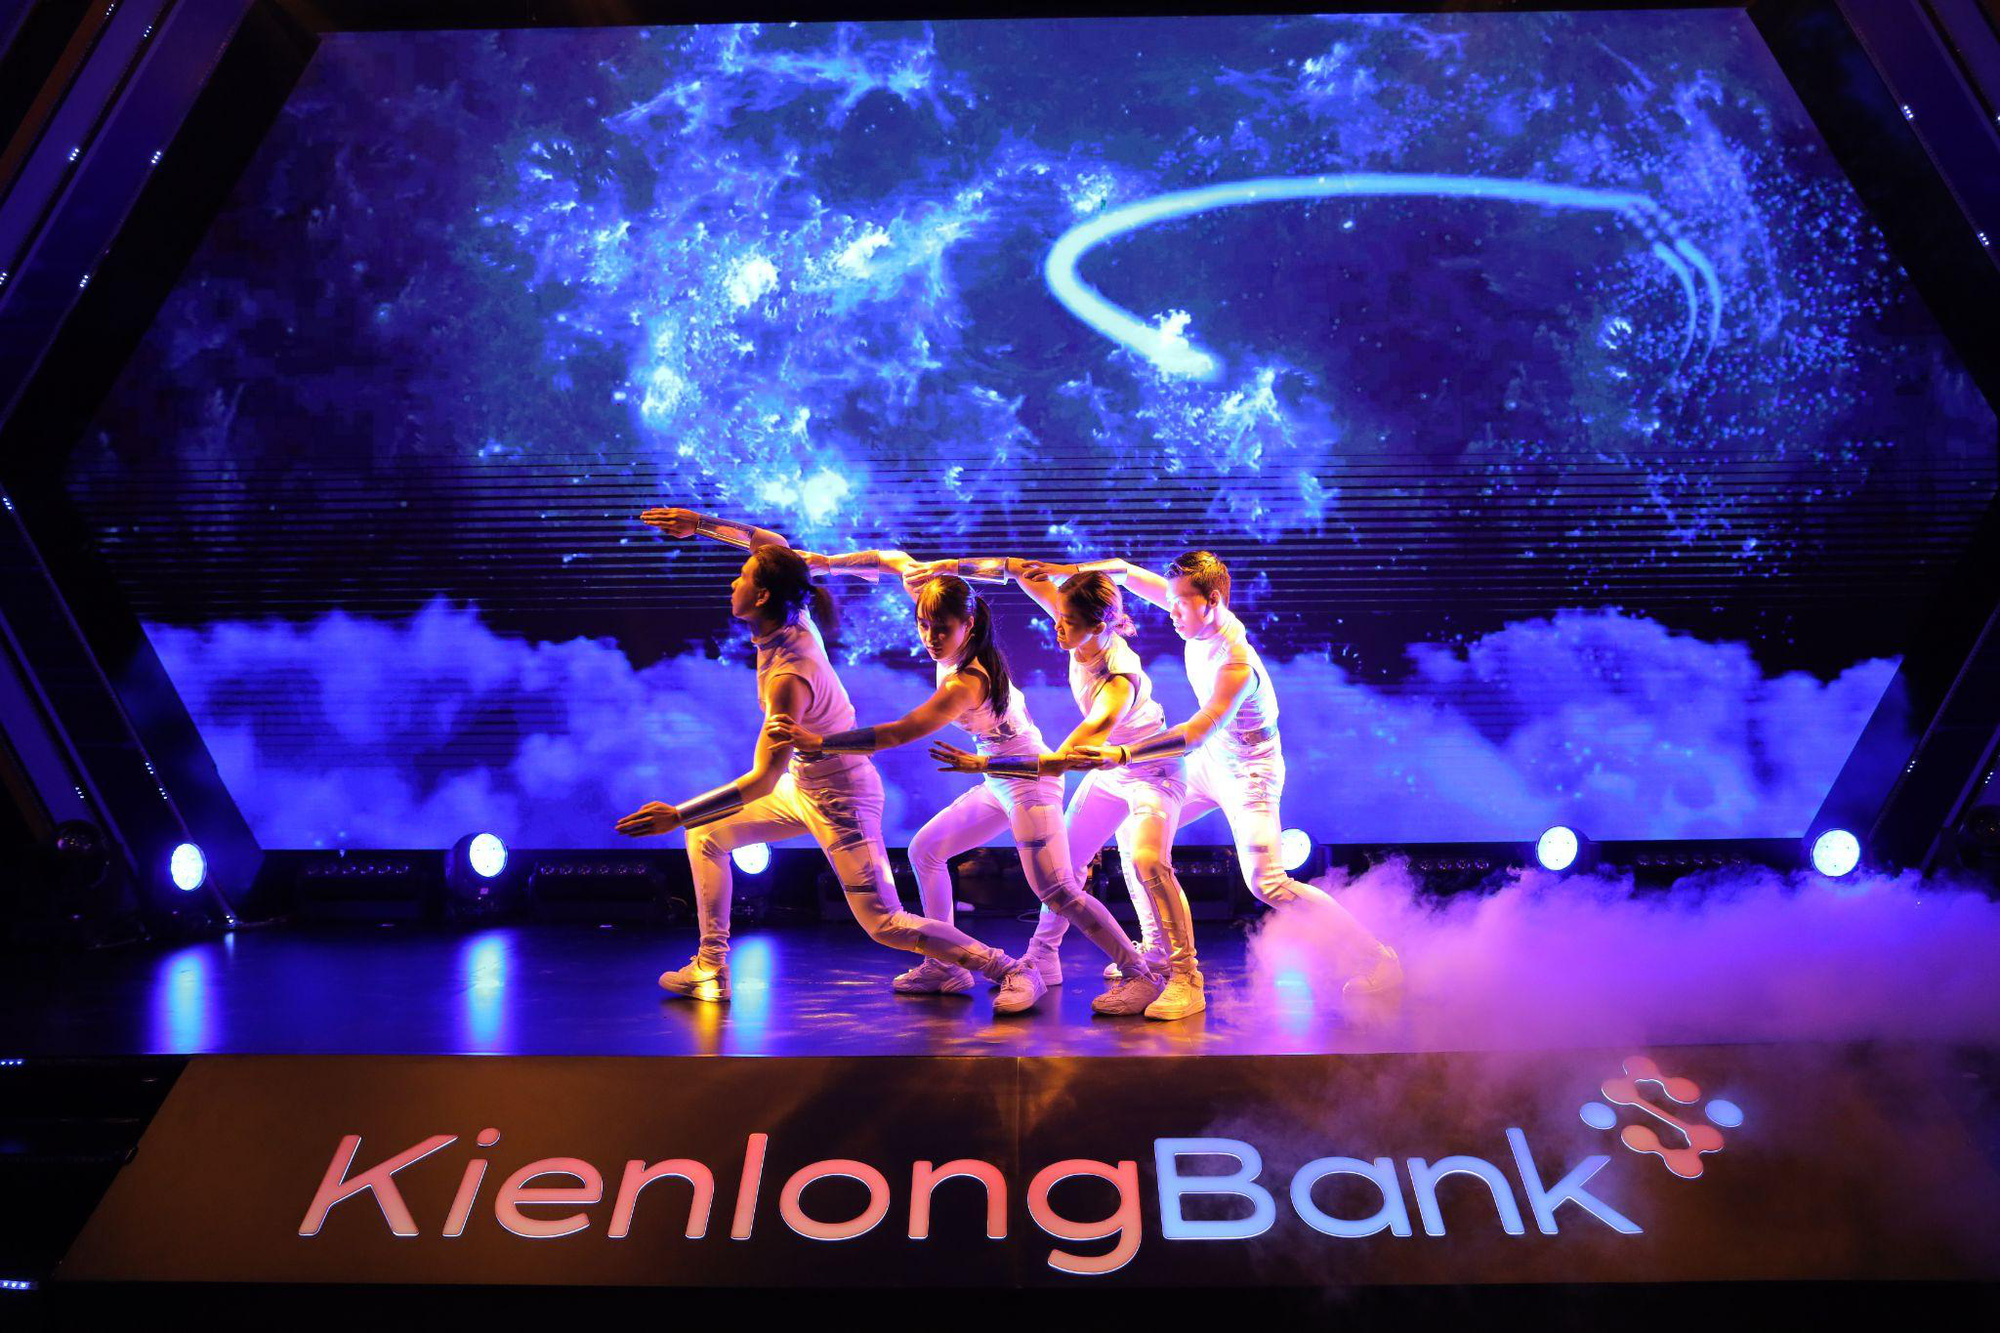 Ấn tượng với sự kiện chuyển mình bứt phá của KienlongBank - Ảnh 8.